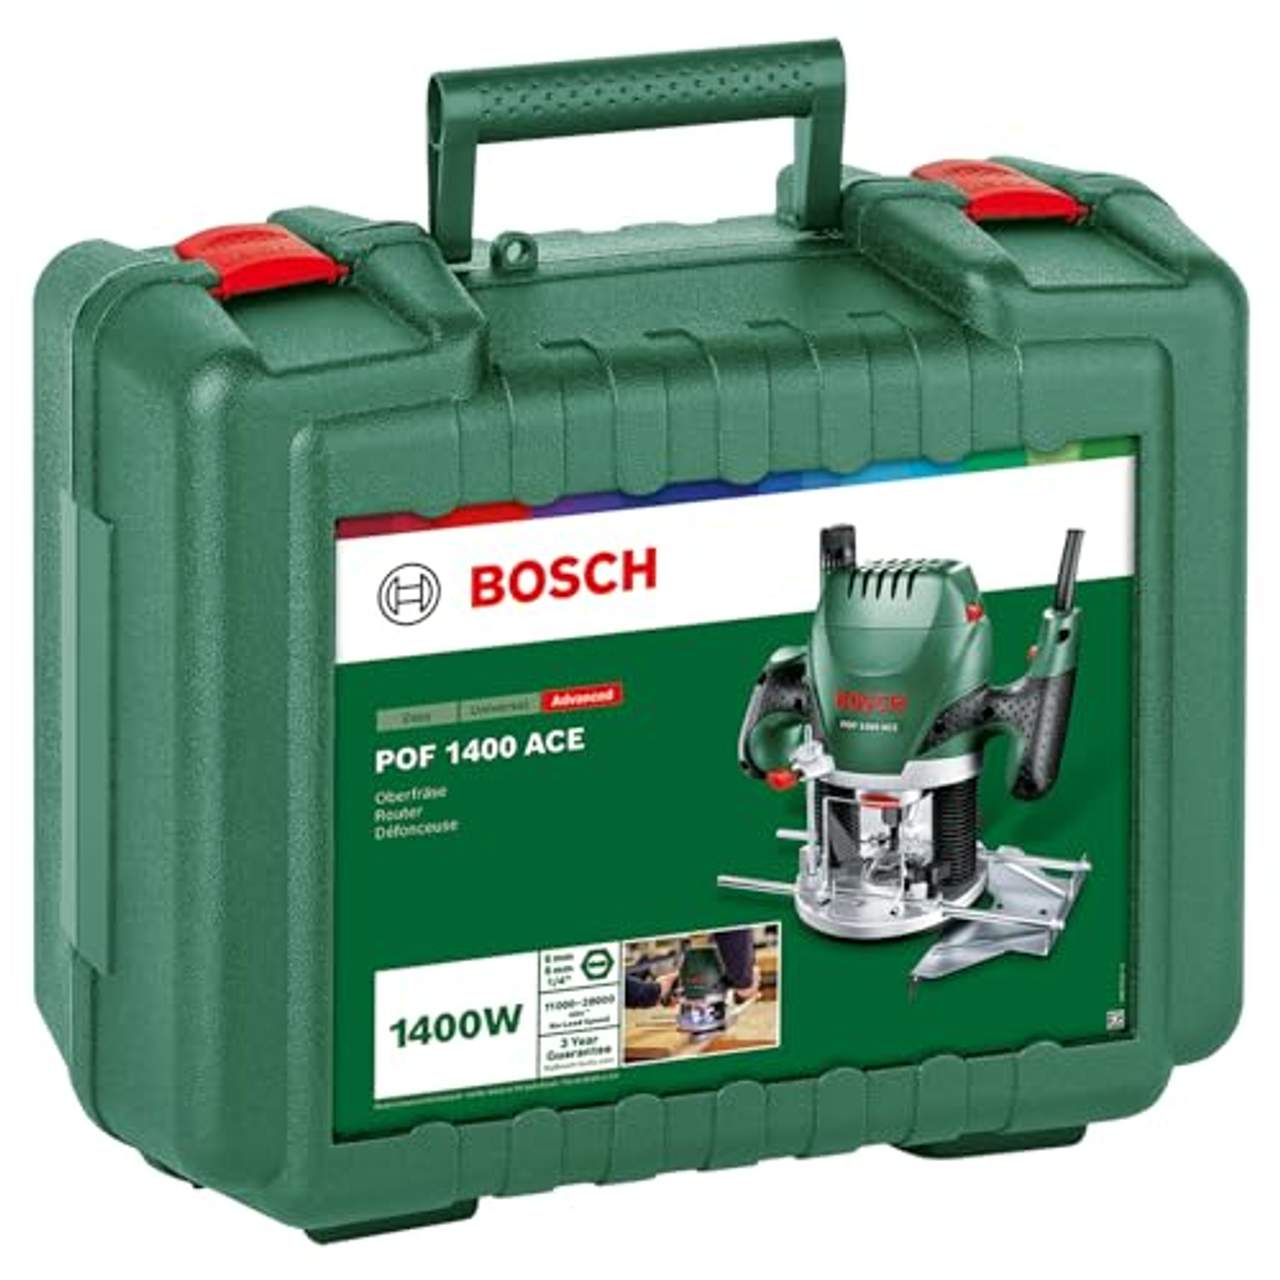 Bosch Oberfräse POF 1400 ACE